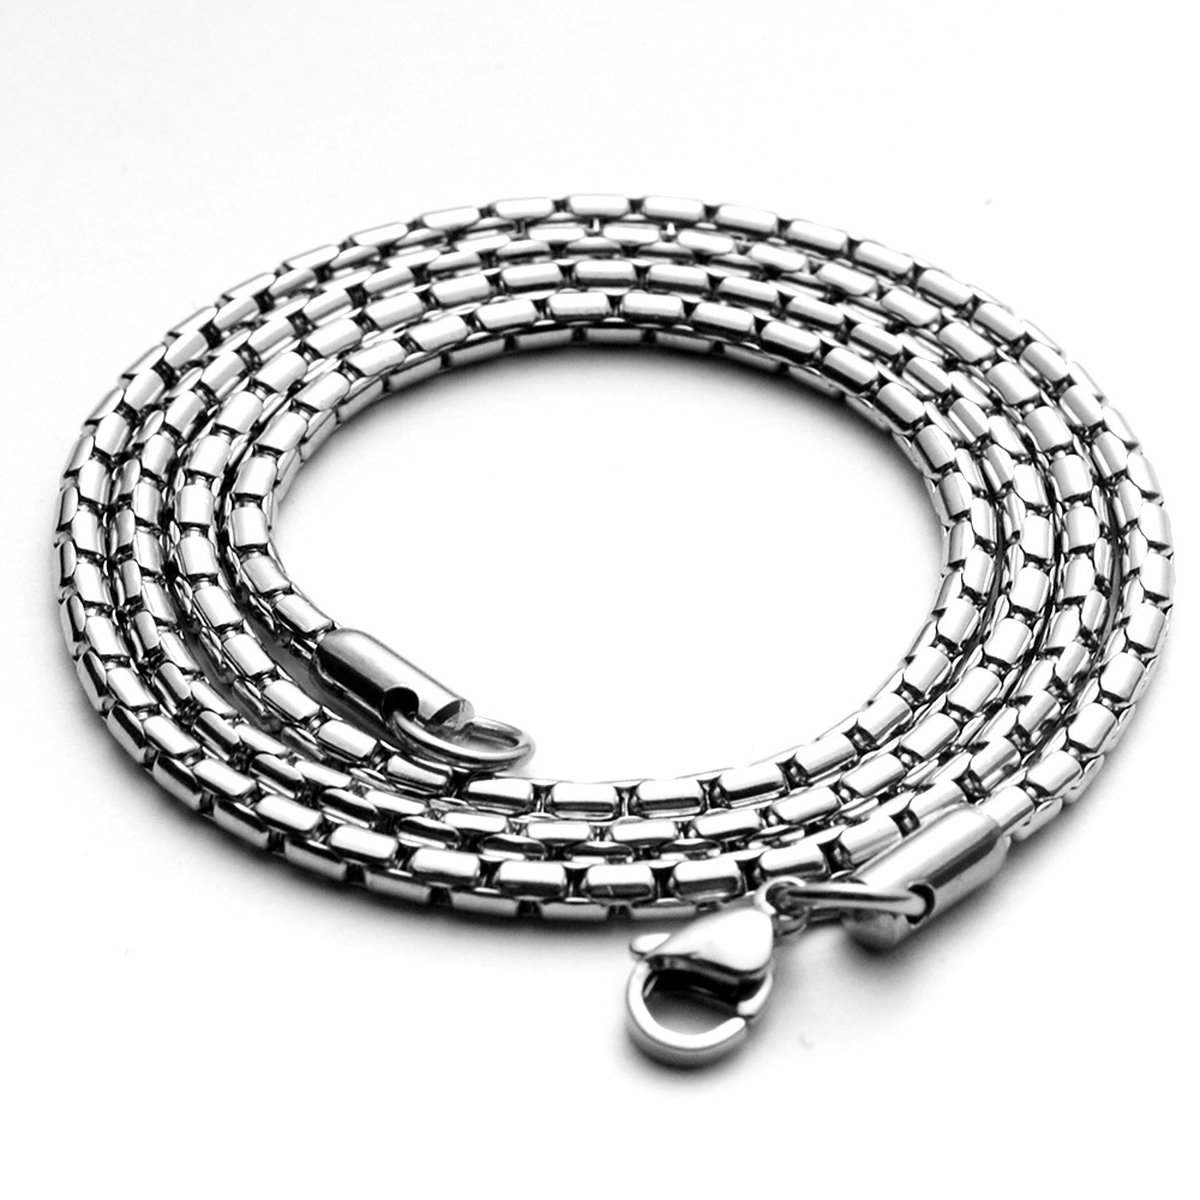 Ketting heren zilver 1,8mm - 70cm lengte - Ketting heren titanium staal - halsketting voor mannen van Mauro Vinci - met geschenkverpakking - Mauro Vinci